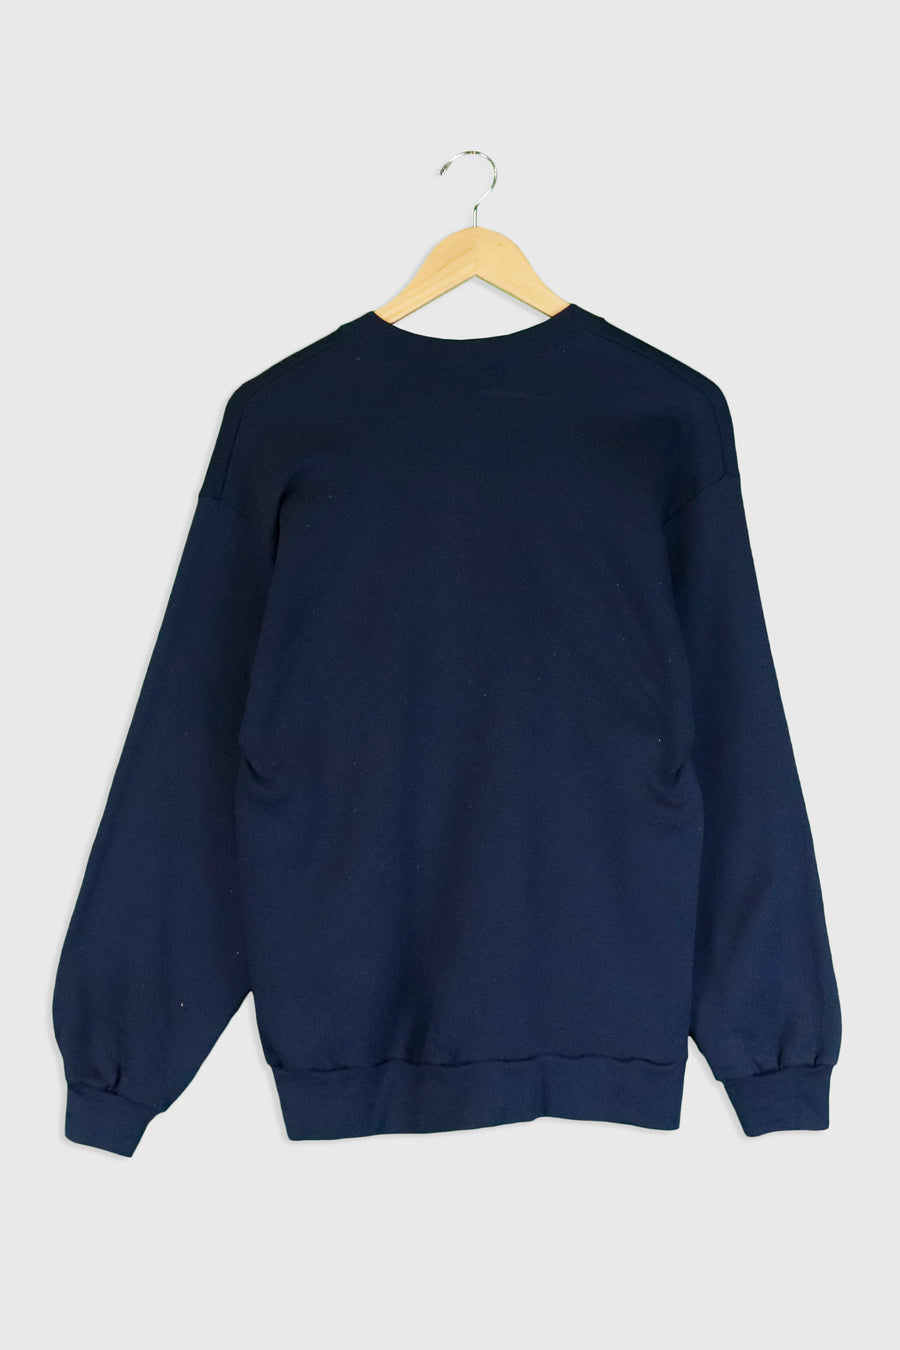 Vintage Alaska 'The Great Outdoors' Sweatshirt Sz XL